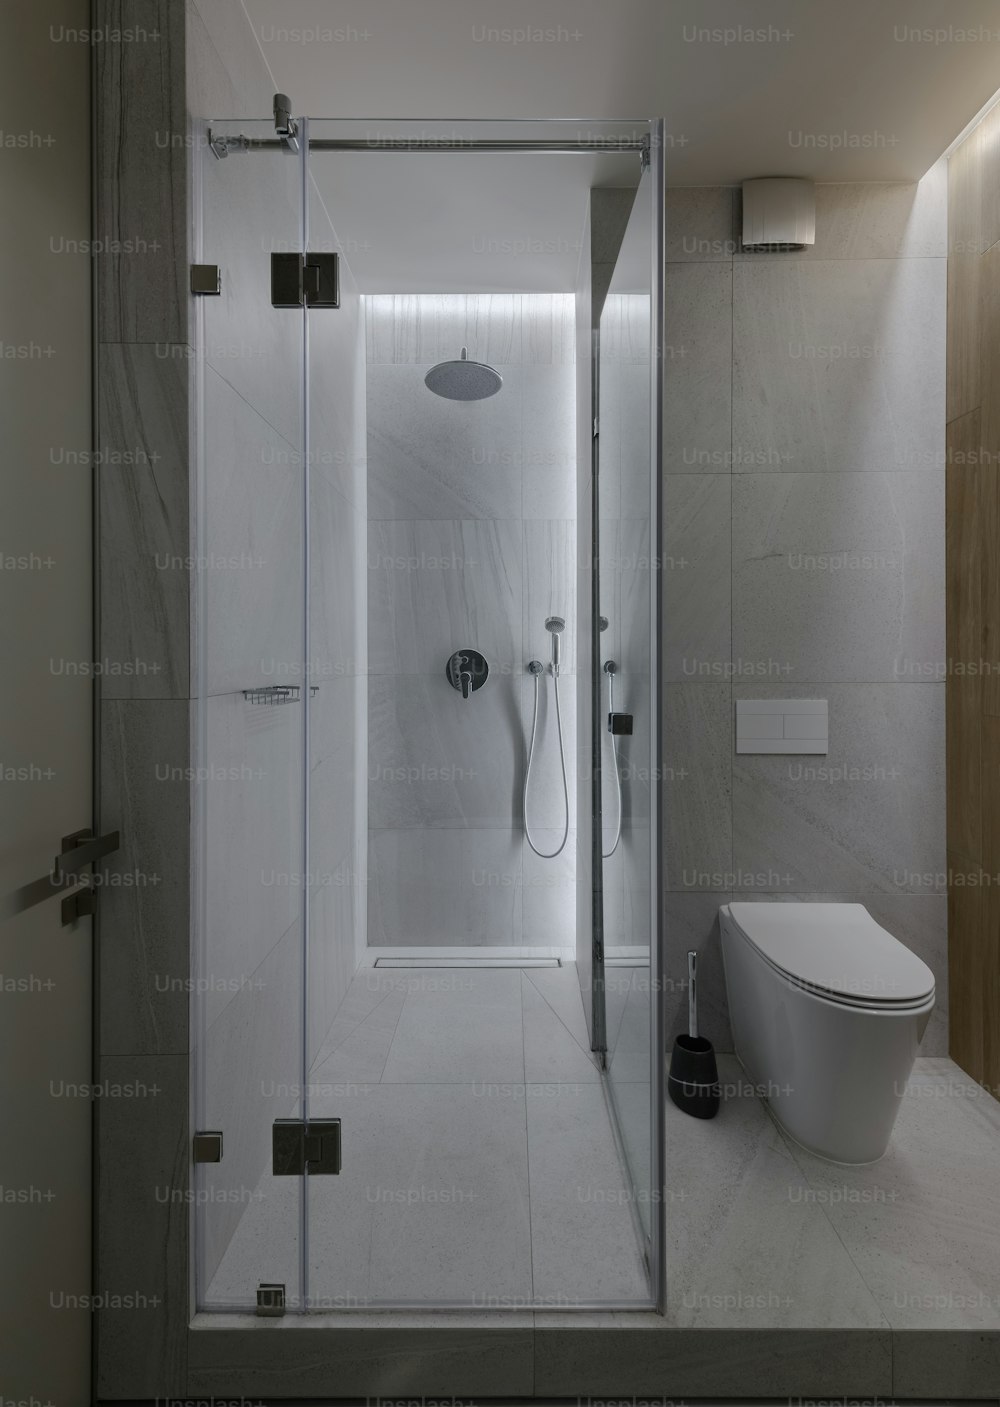 un baño moderno con ducha a ras de suelo